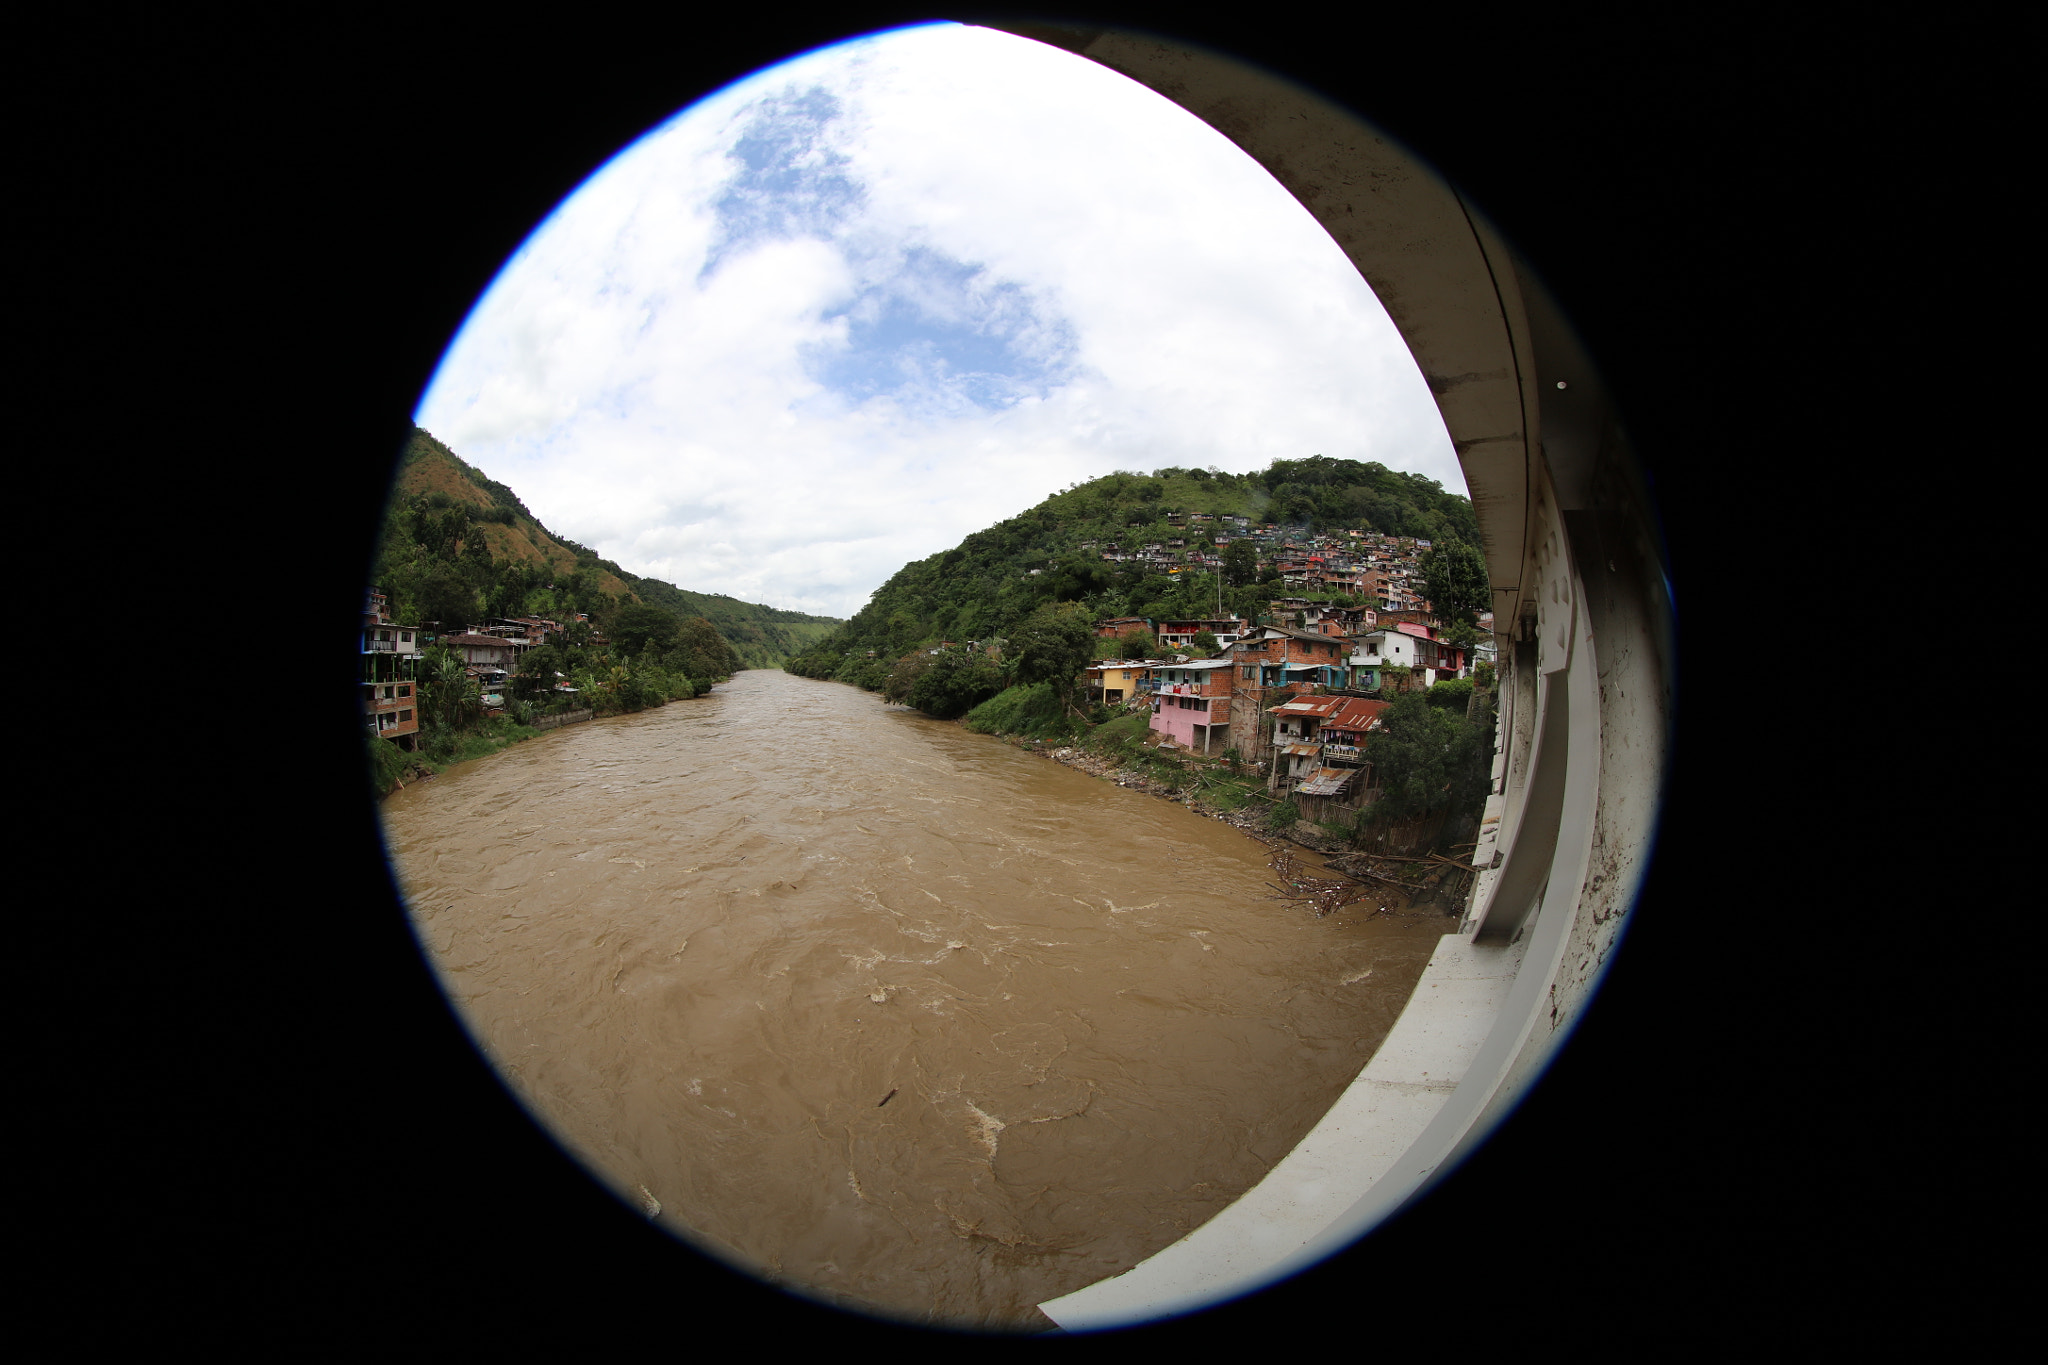 Canon EF 8-15mm F4L Fisheye USM sample photo. Río cauca, corre entre la cordillera central y oriental en colombia, a la altura de arauca caldas. photography